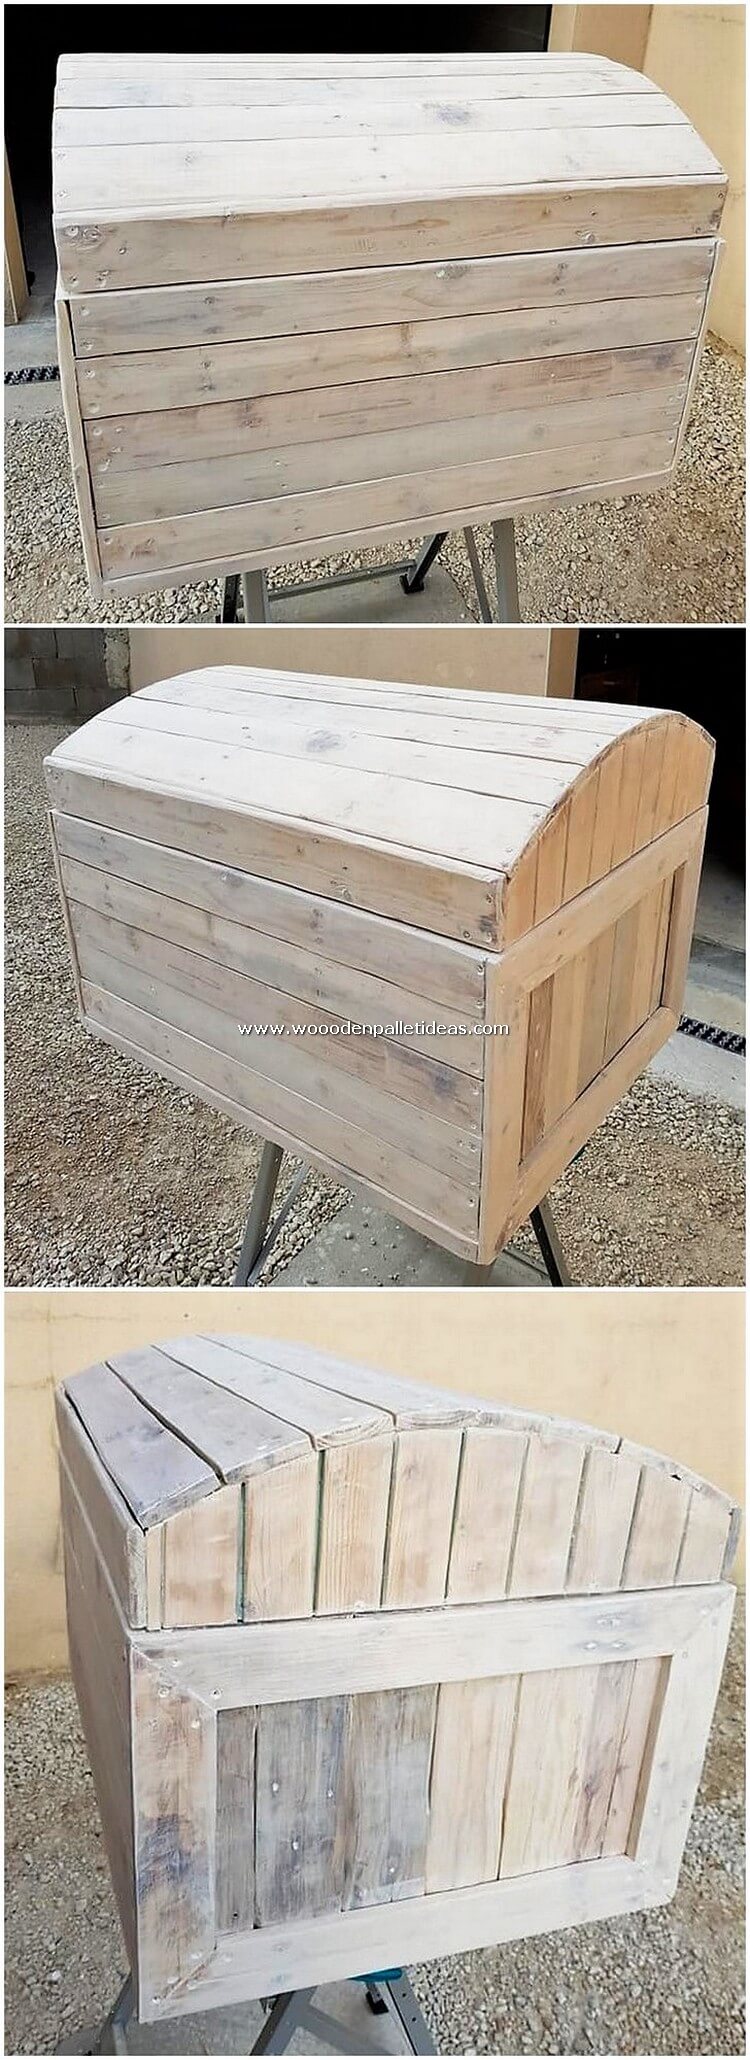 Wood-Pallet-Storage-Box